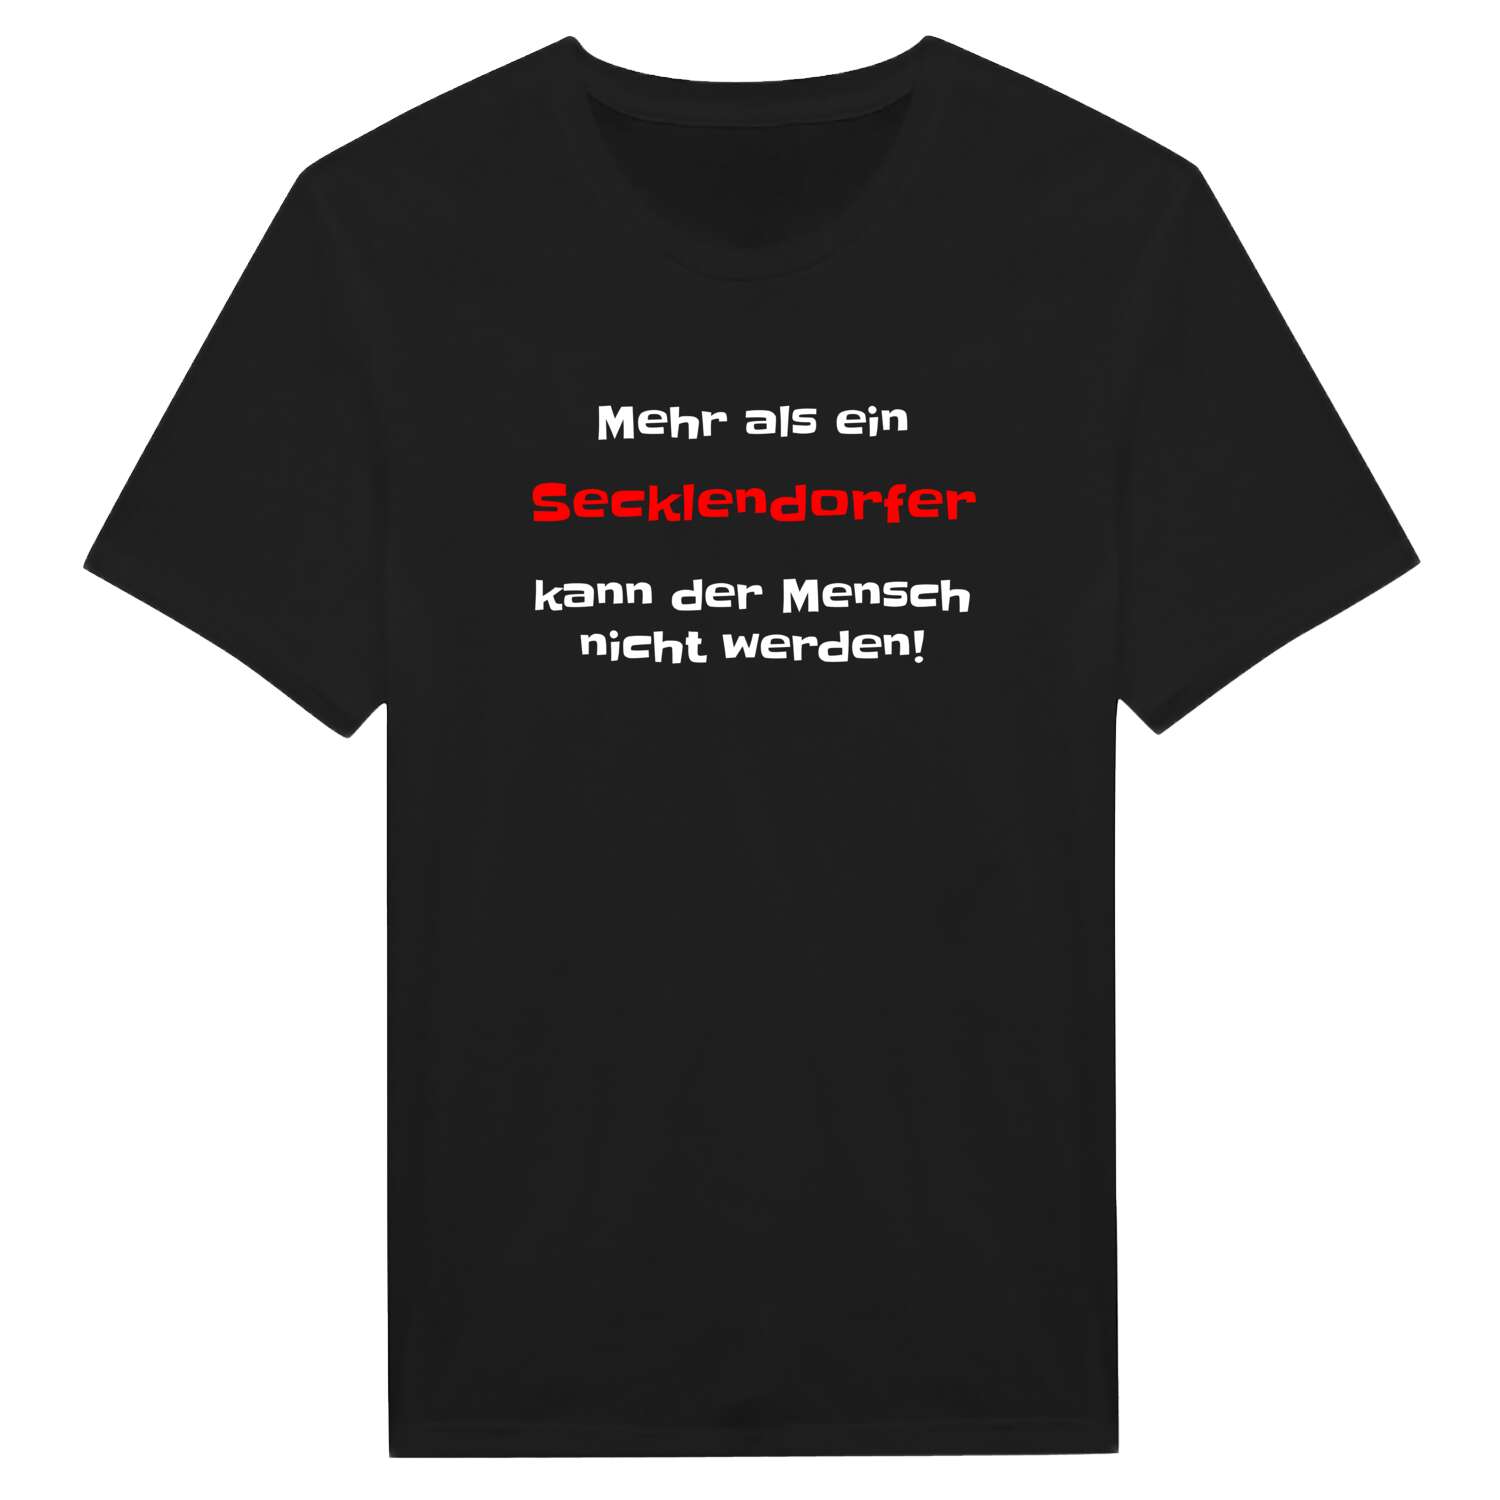 Secklendorf T-Shirt »Mehr als ein«